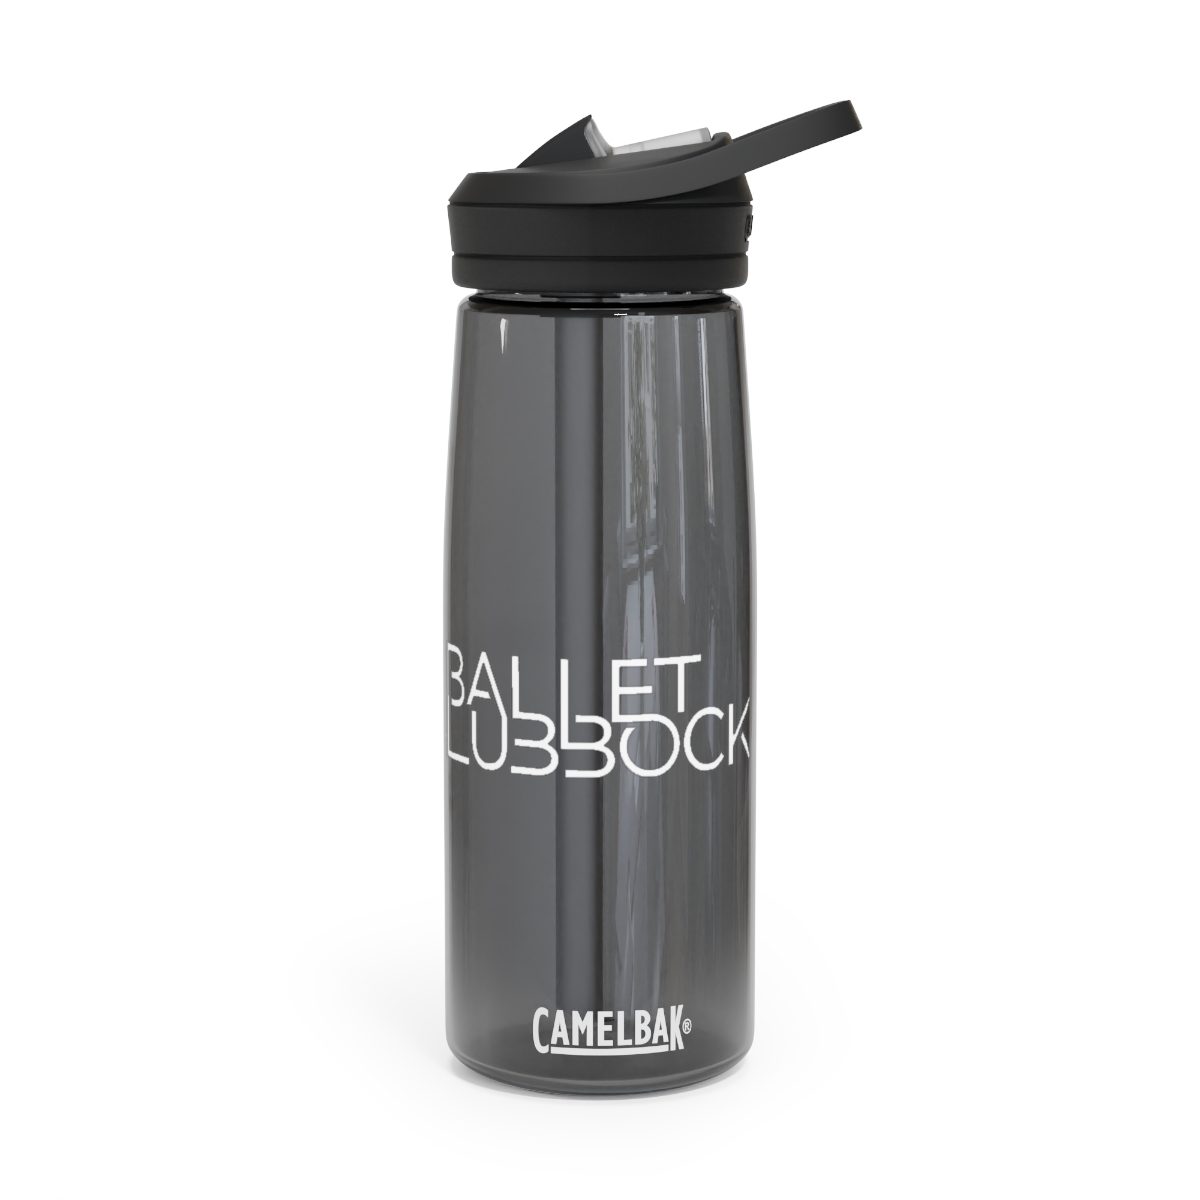 CamelBak Eddy® Water Bottle, 20oz25oz - Ballet Lubbock